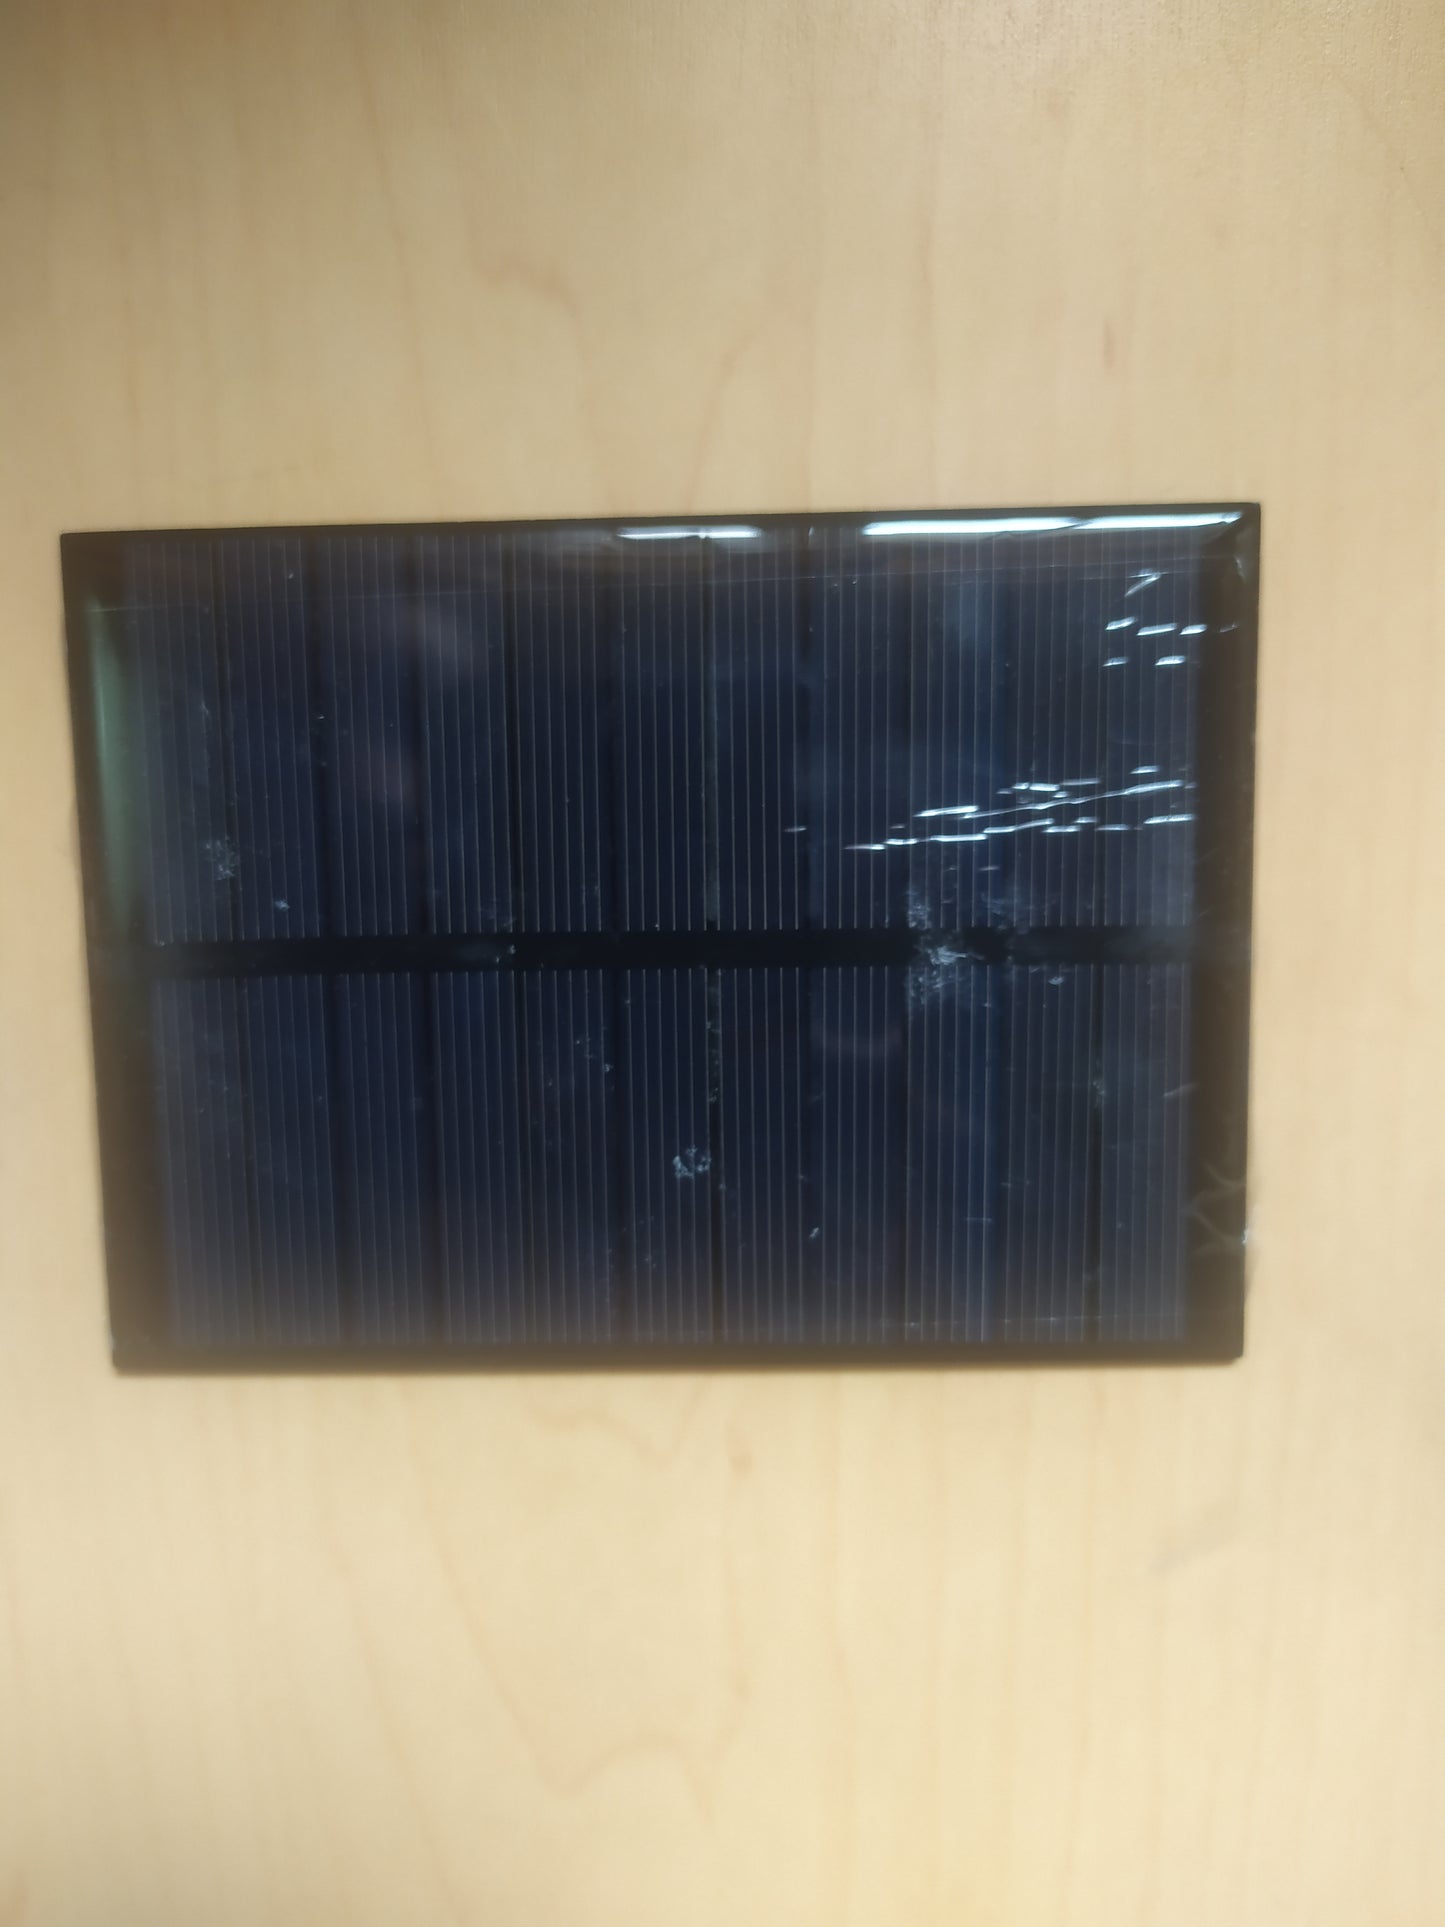 solar panel 5.5V160mA 0.88watts